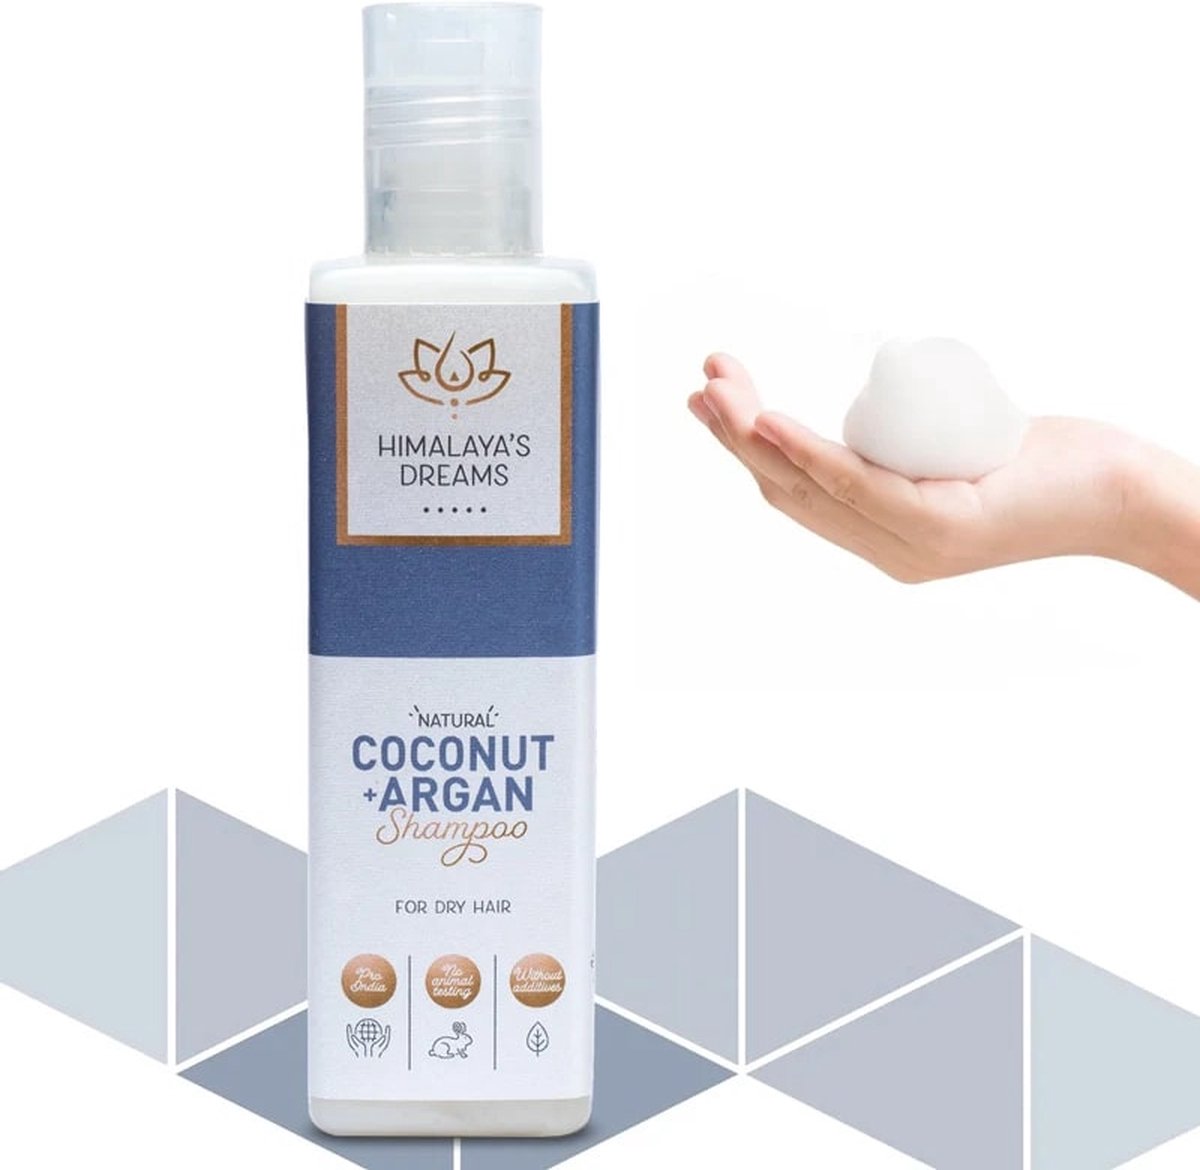 Shampoo met ayurvedische kruiden Kokosnoot & Argan, voor droog haar, Himalaya's Dreams, vegan, 200 ml